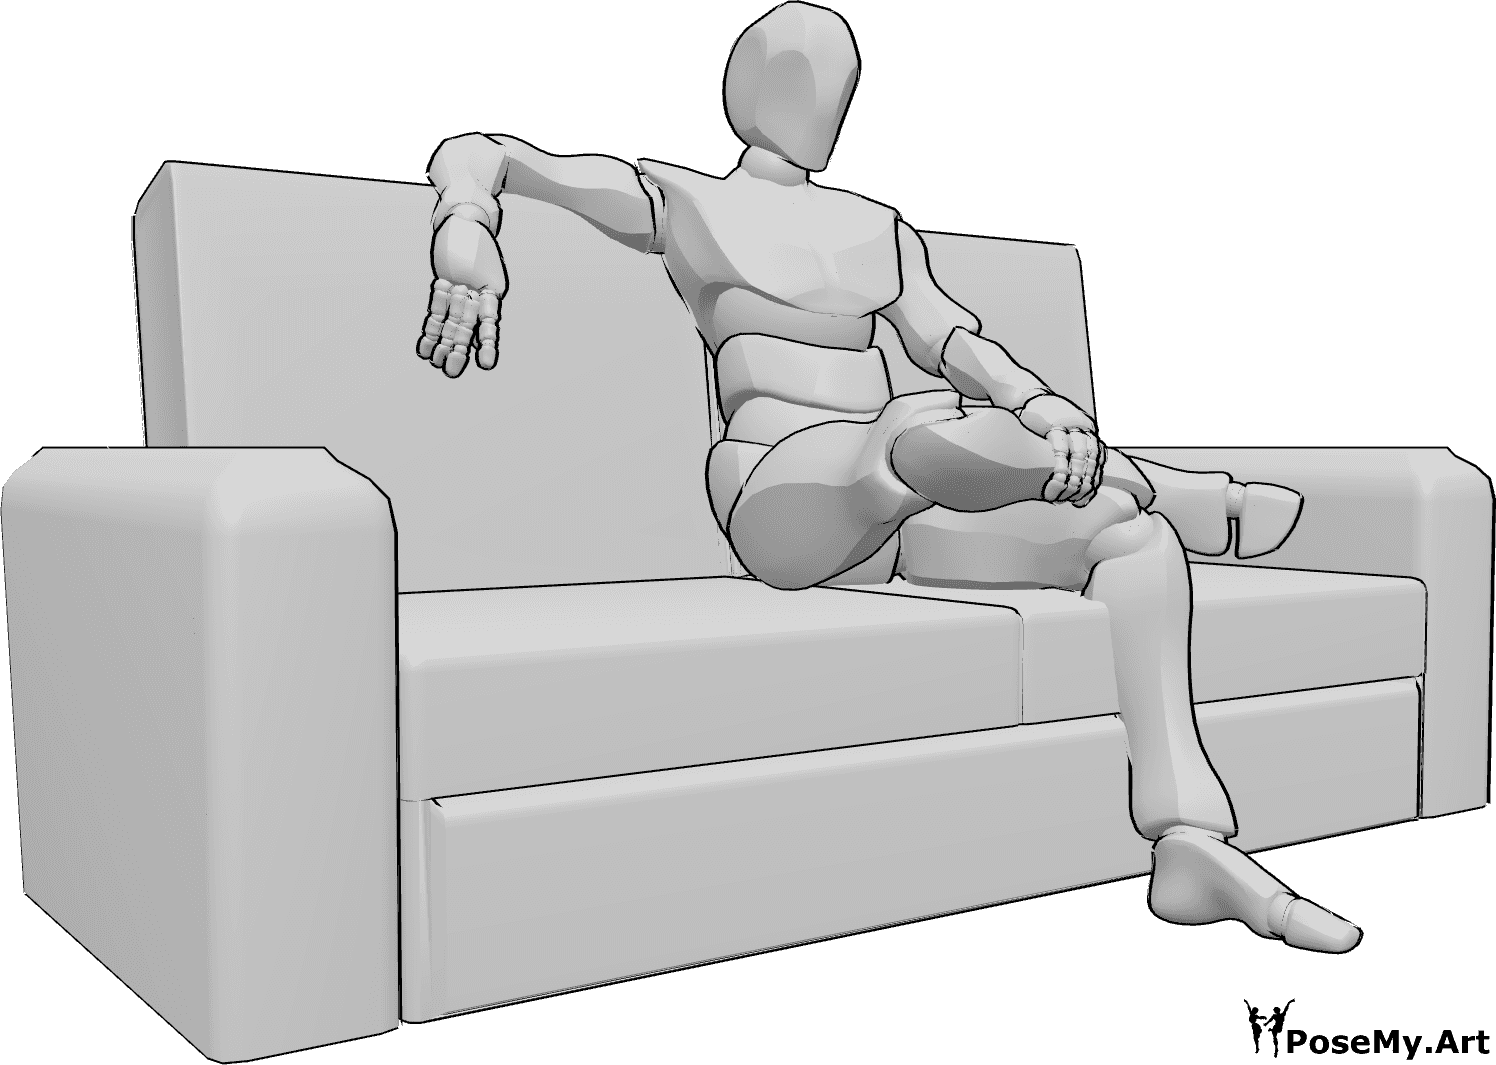 Référence des poses- Position assise jambes croisées - L'homme est assis sur le canapé, les jambes croisées, se tenant la jambe de la main gauche et posant la main droite sur le canapé.